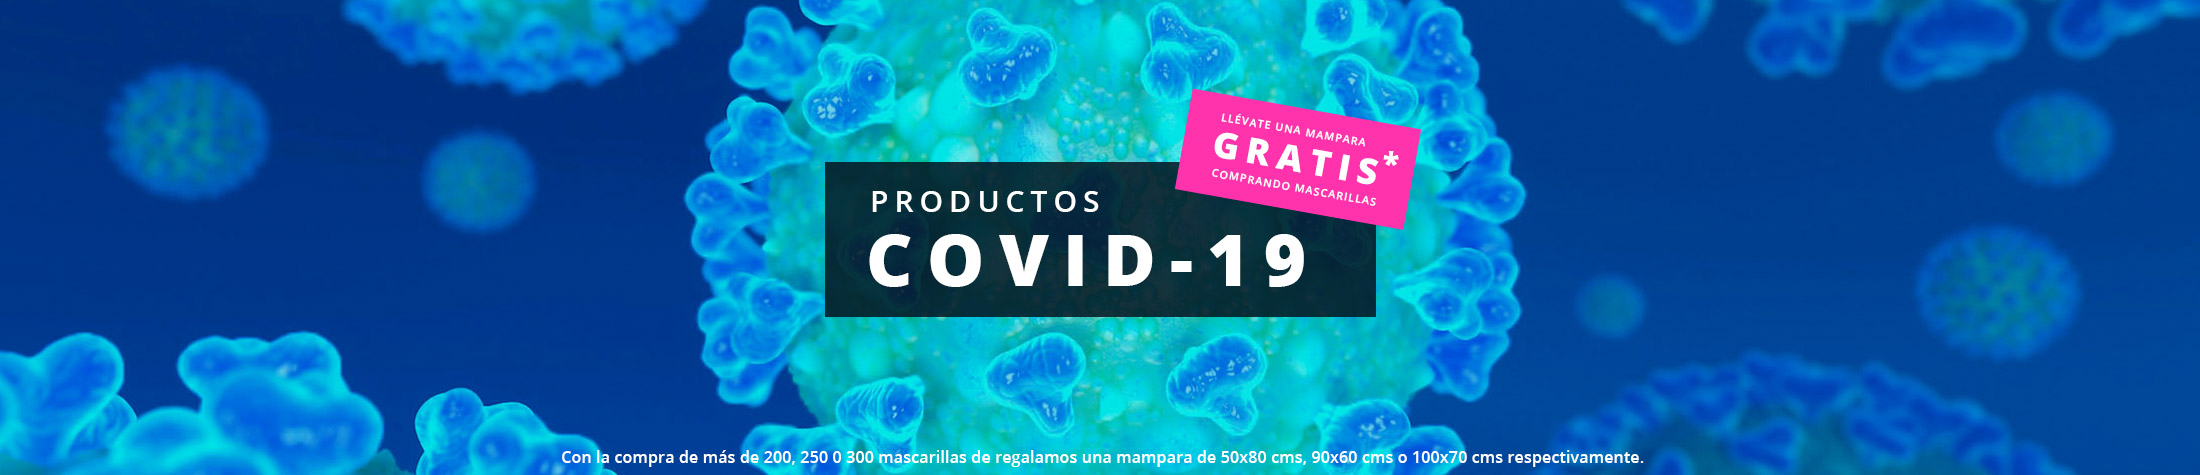 Productos COVID-19